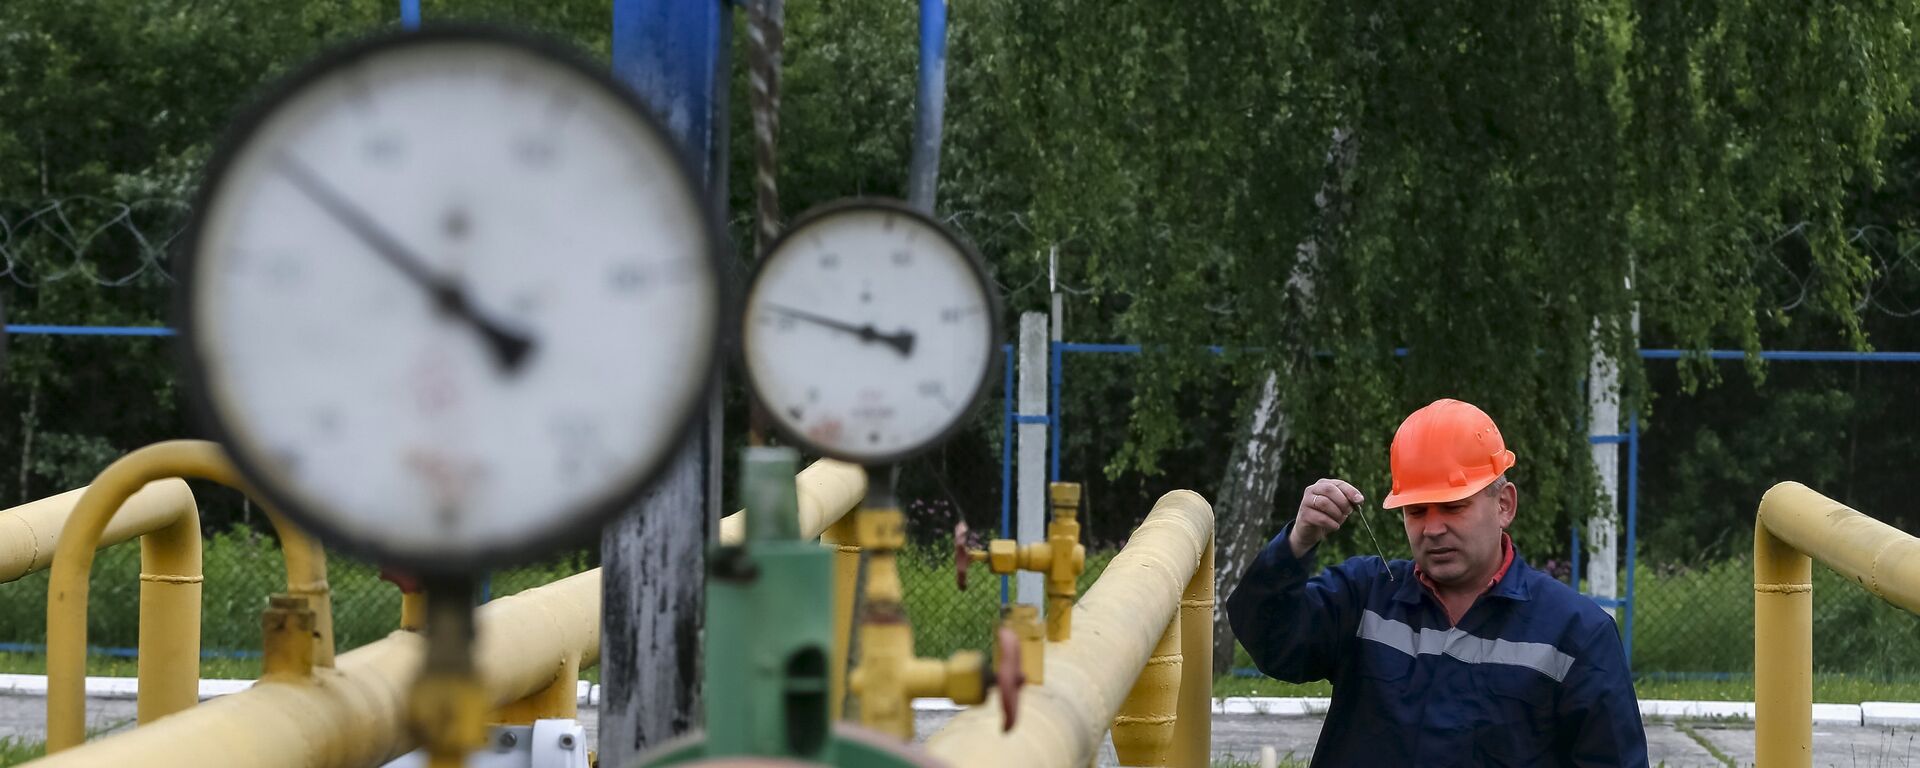 A worker checks equipment at an Dashava underground gas storage facility near Striy, Ukraine May 28, 2015 - Sputnik International, 1920, 28.02.2022